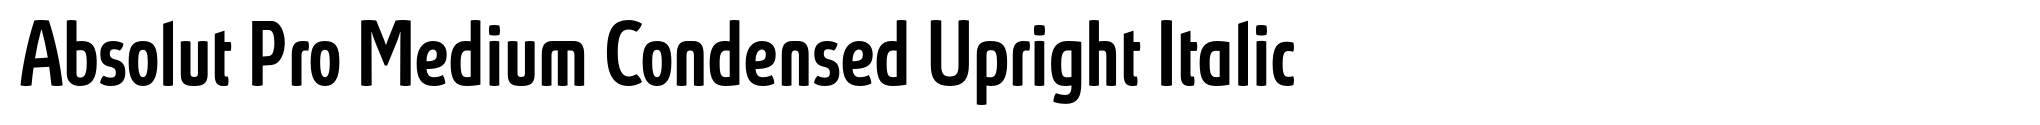 Absolut Pro Medium Condensed Upright Italic image